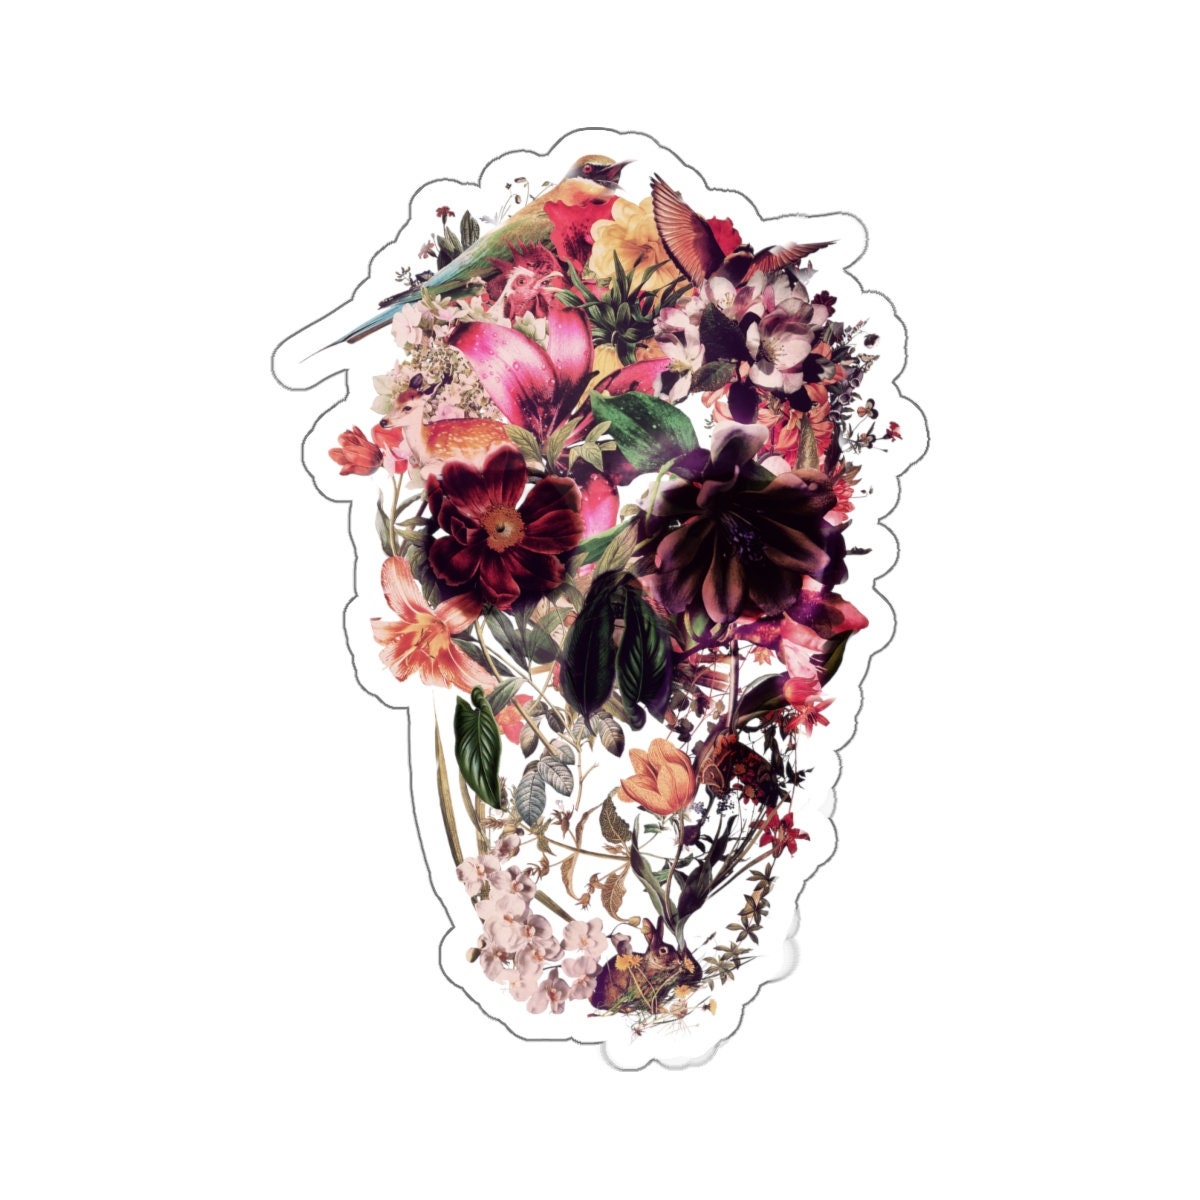 Flower Skull Sticker, Boho Sugar Skull Art Sticker, Premium Skull Art Vinyl Sticker, Gothic Art Skull Gift, Laptop Phone Kiss-Cut Sticker